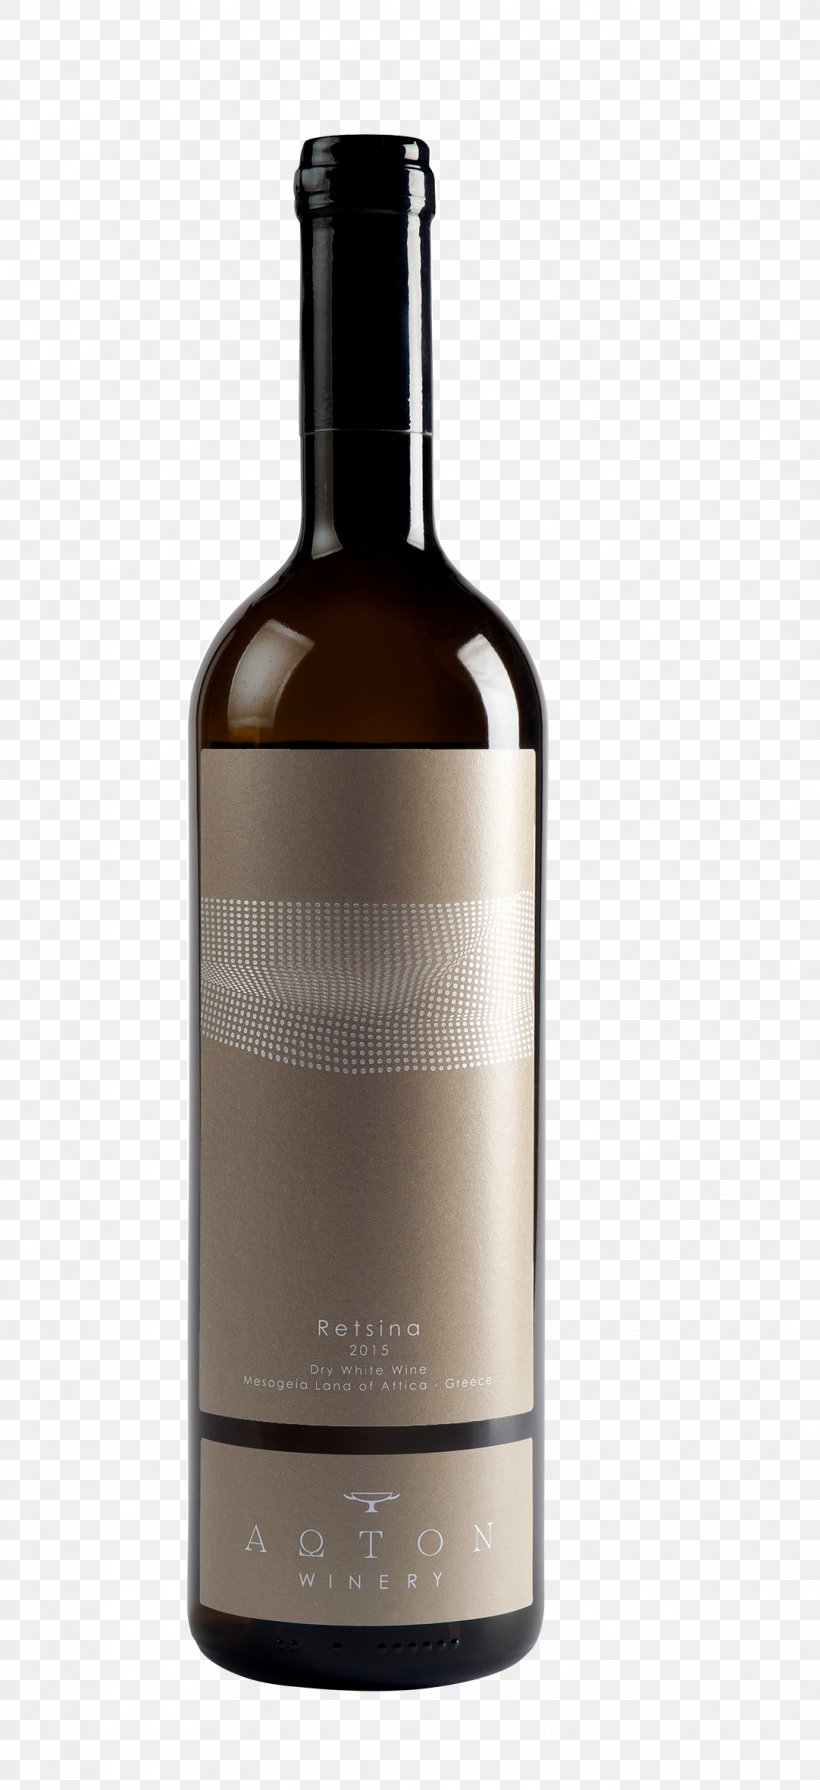 ΑΩΤΟΝ Winery / Aoton Winery Retsina Rhoditis Savatiano, PNG, 1082x2362px, Wine, Alcoholic Beverage, Attica, Bottle, Distilled Beverage Download Free